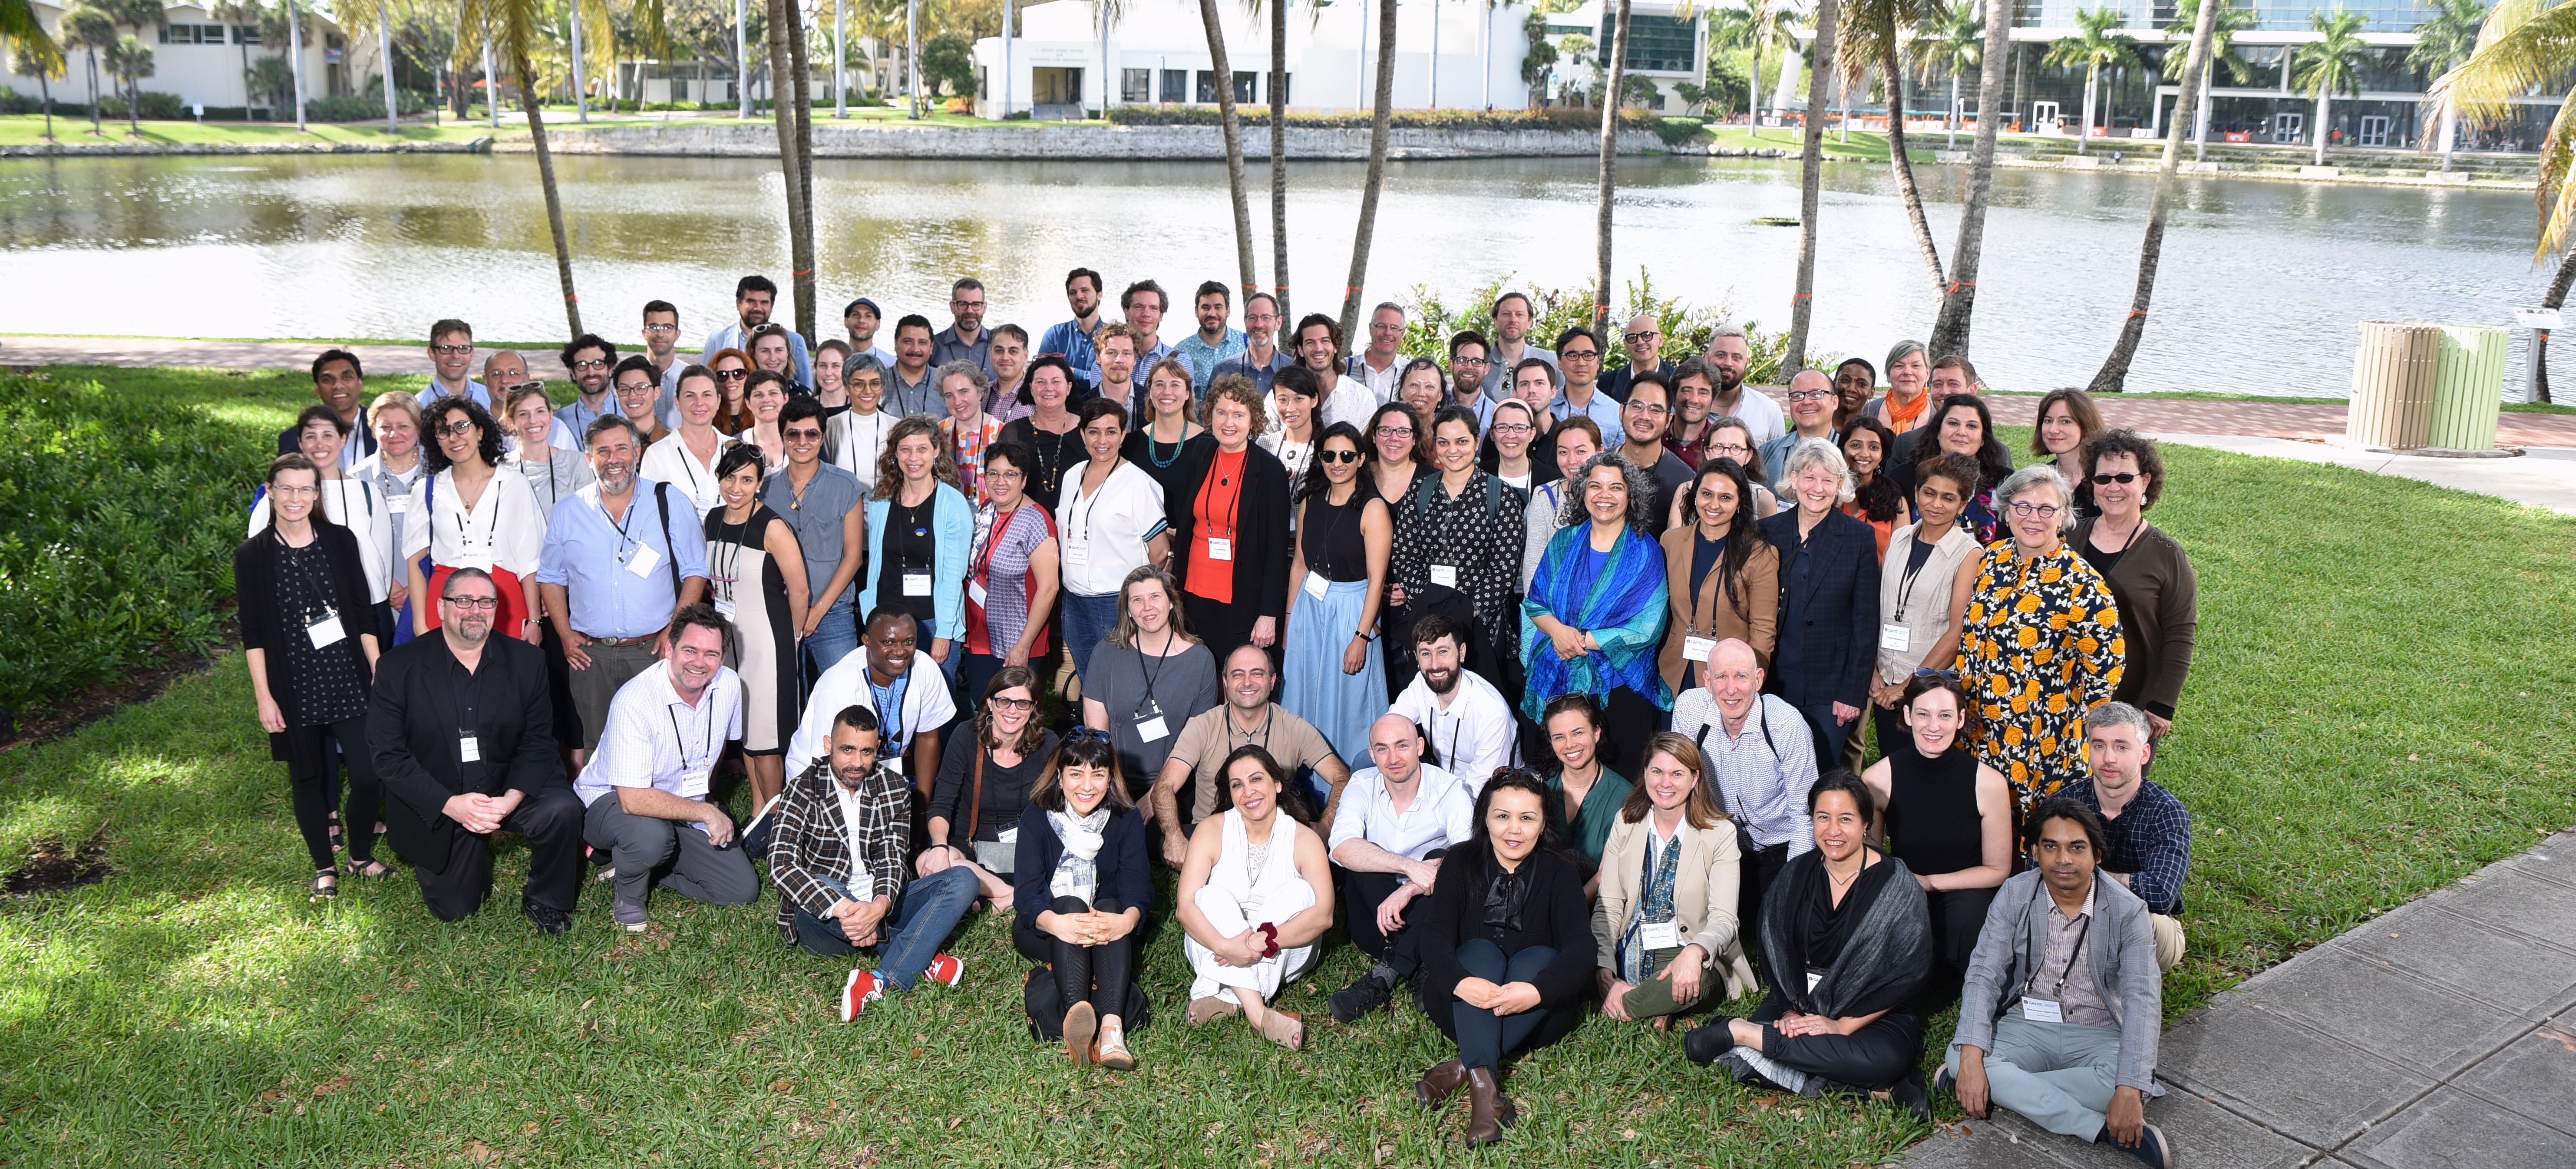 2019 Member's Conference - Miami